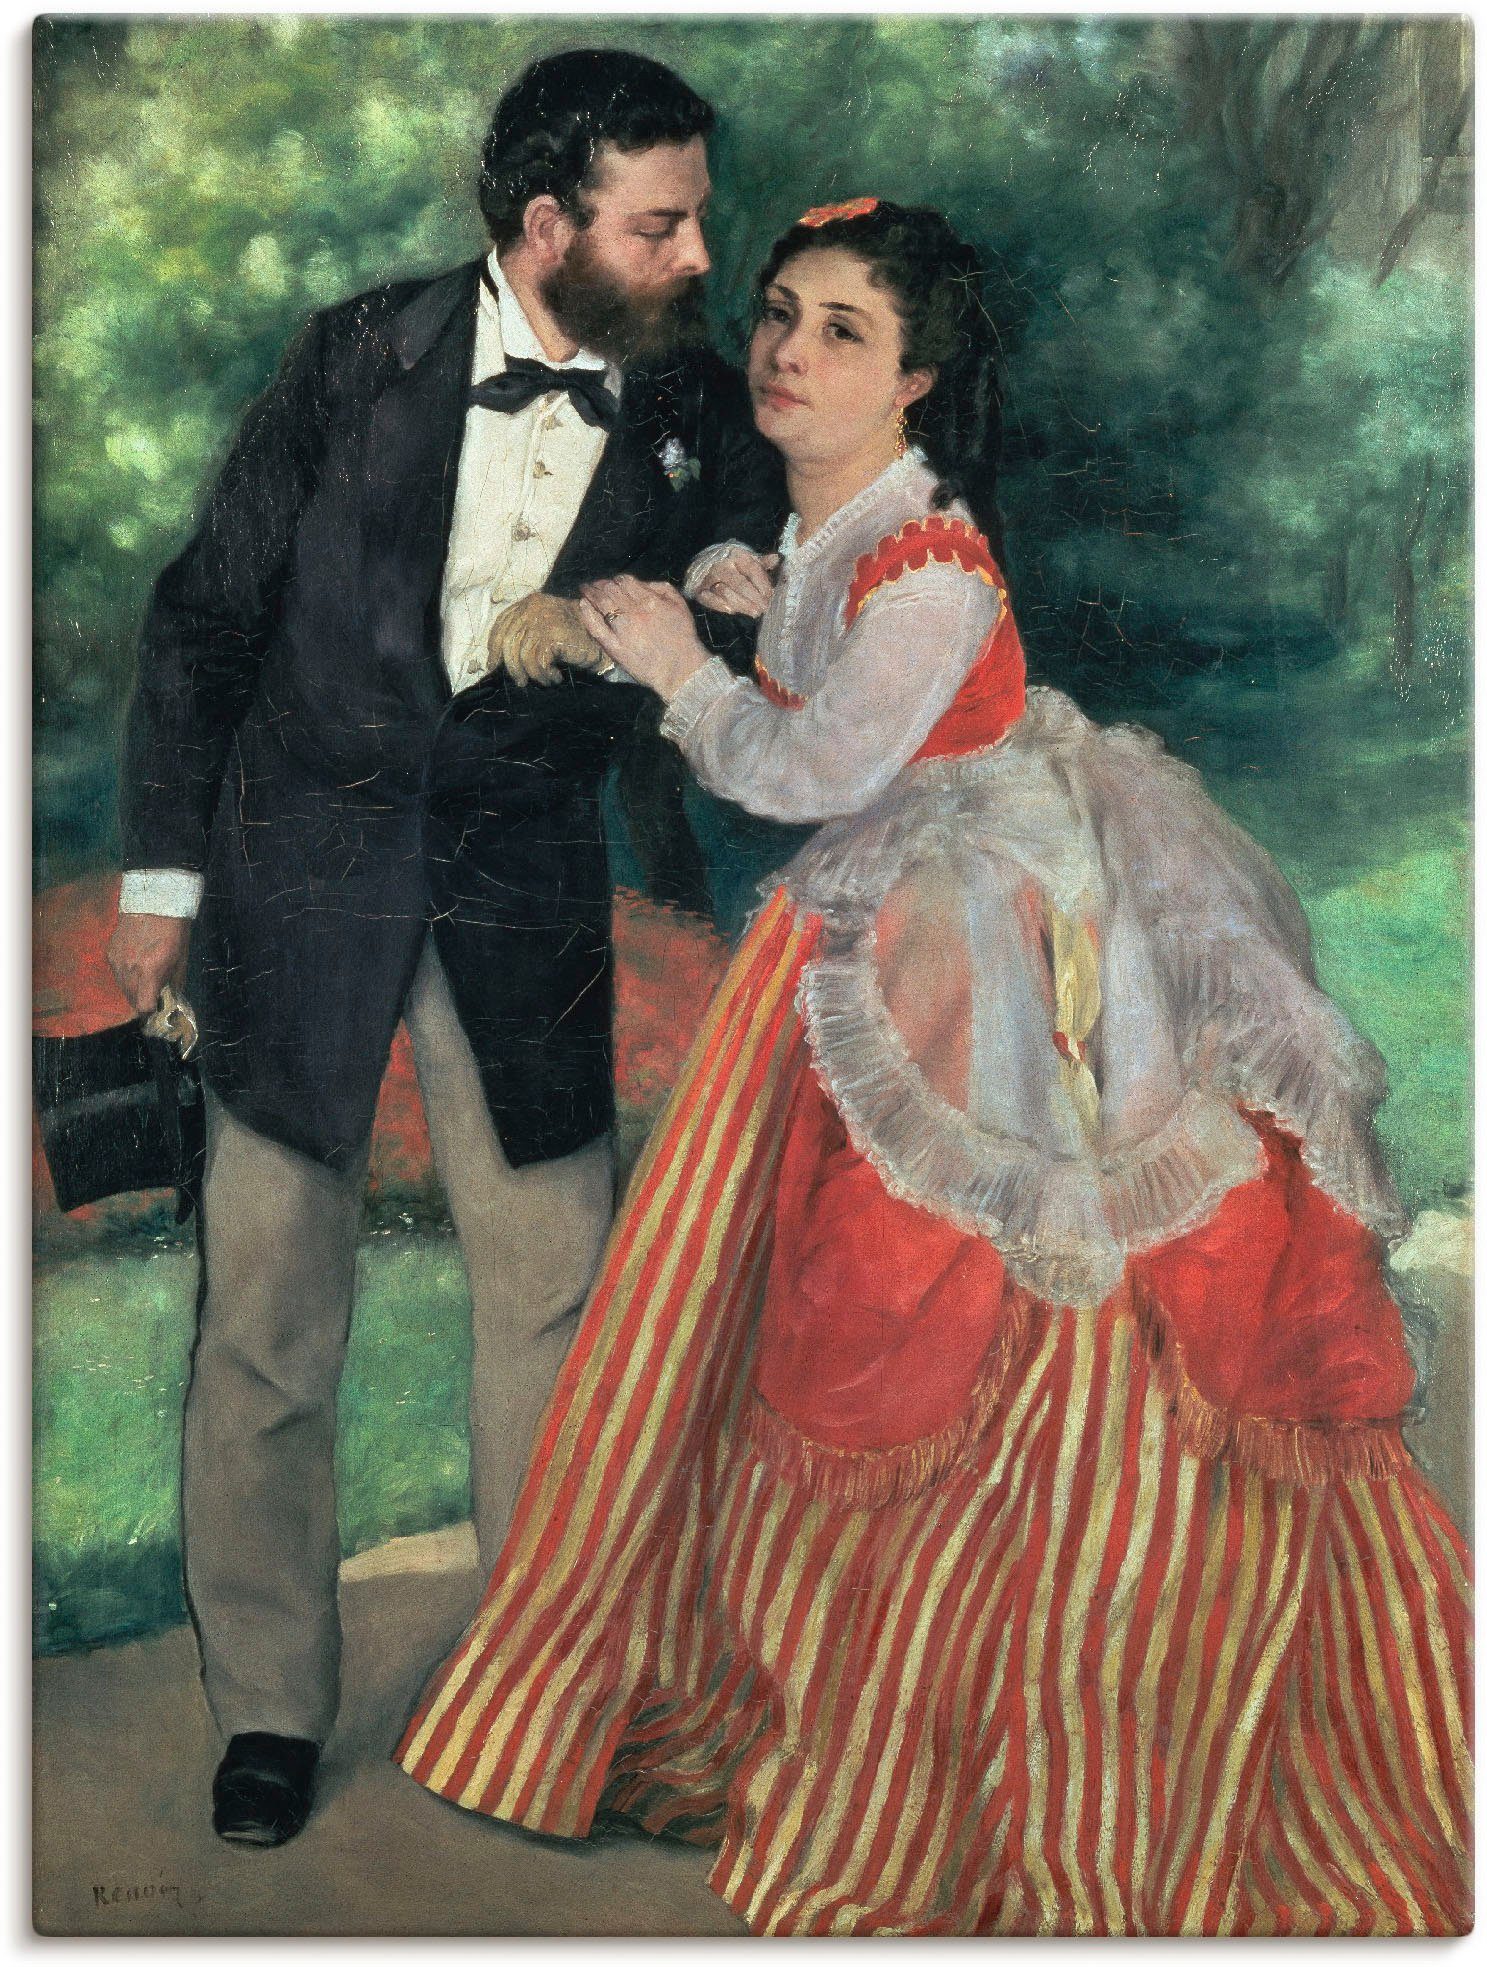 Artland Artprint Het echtpaar Alfred Sisley. 1868 in vele afmetingen & productsoorten -artprint op linnen, poster, muursticker / wandfolie ook geschikt voor de badkamer (1 stuk)